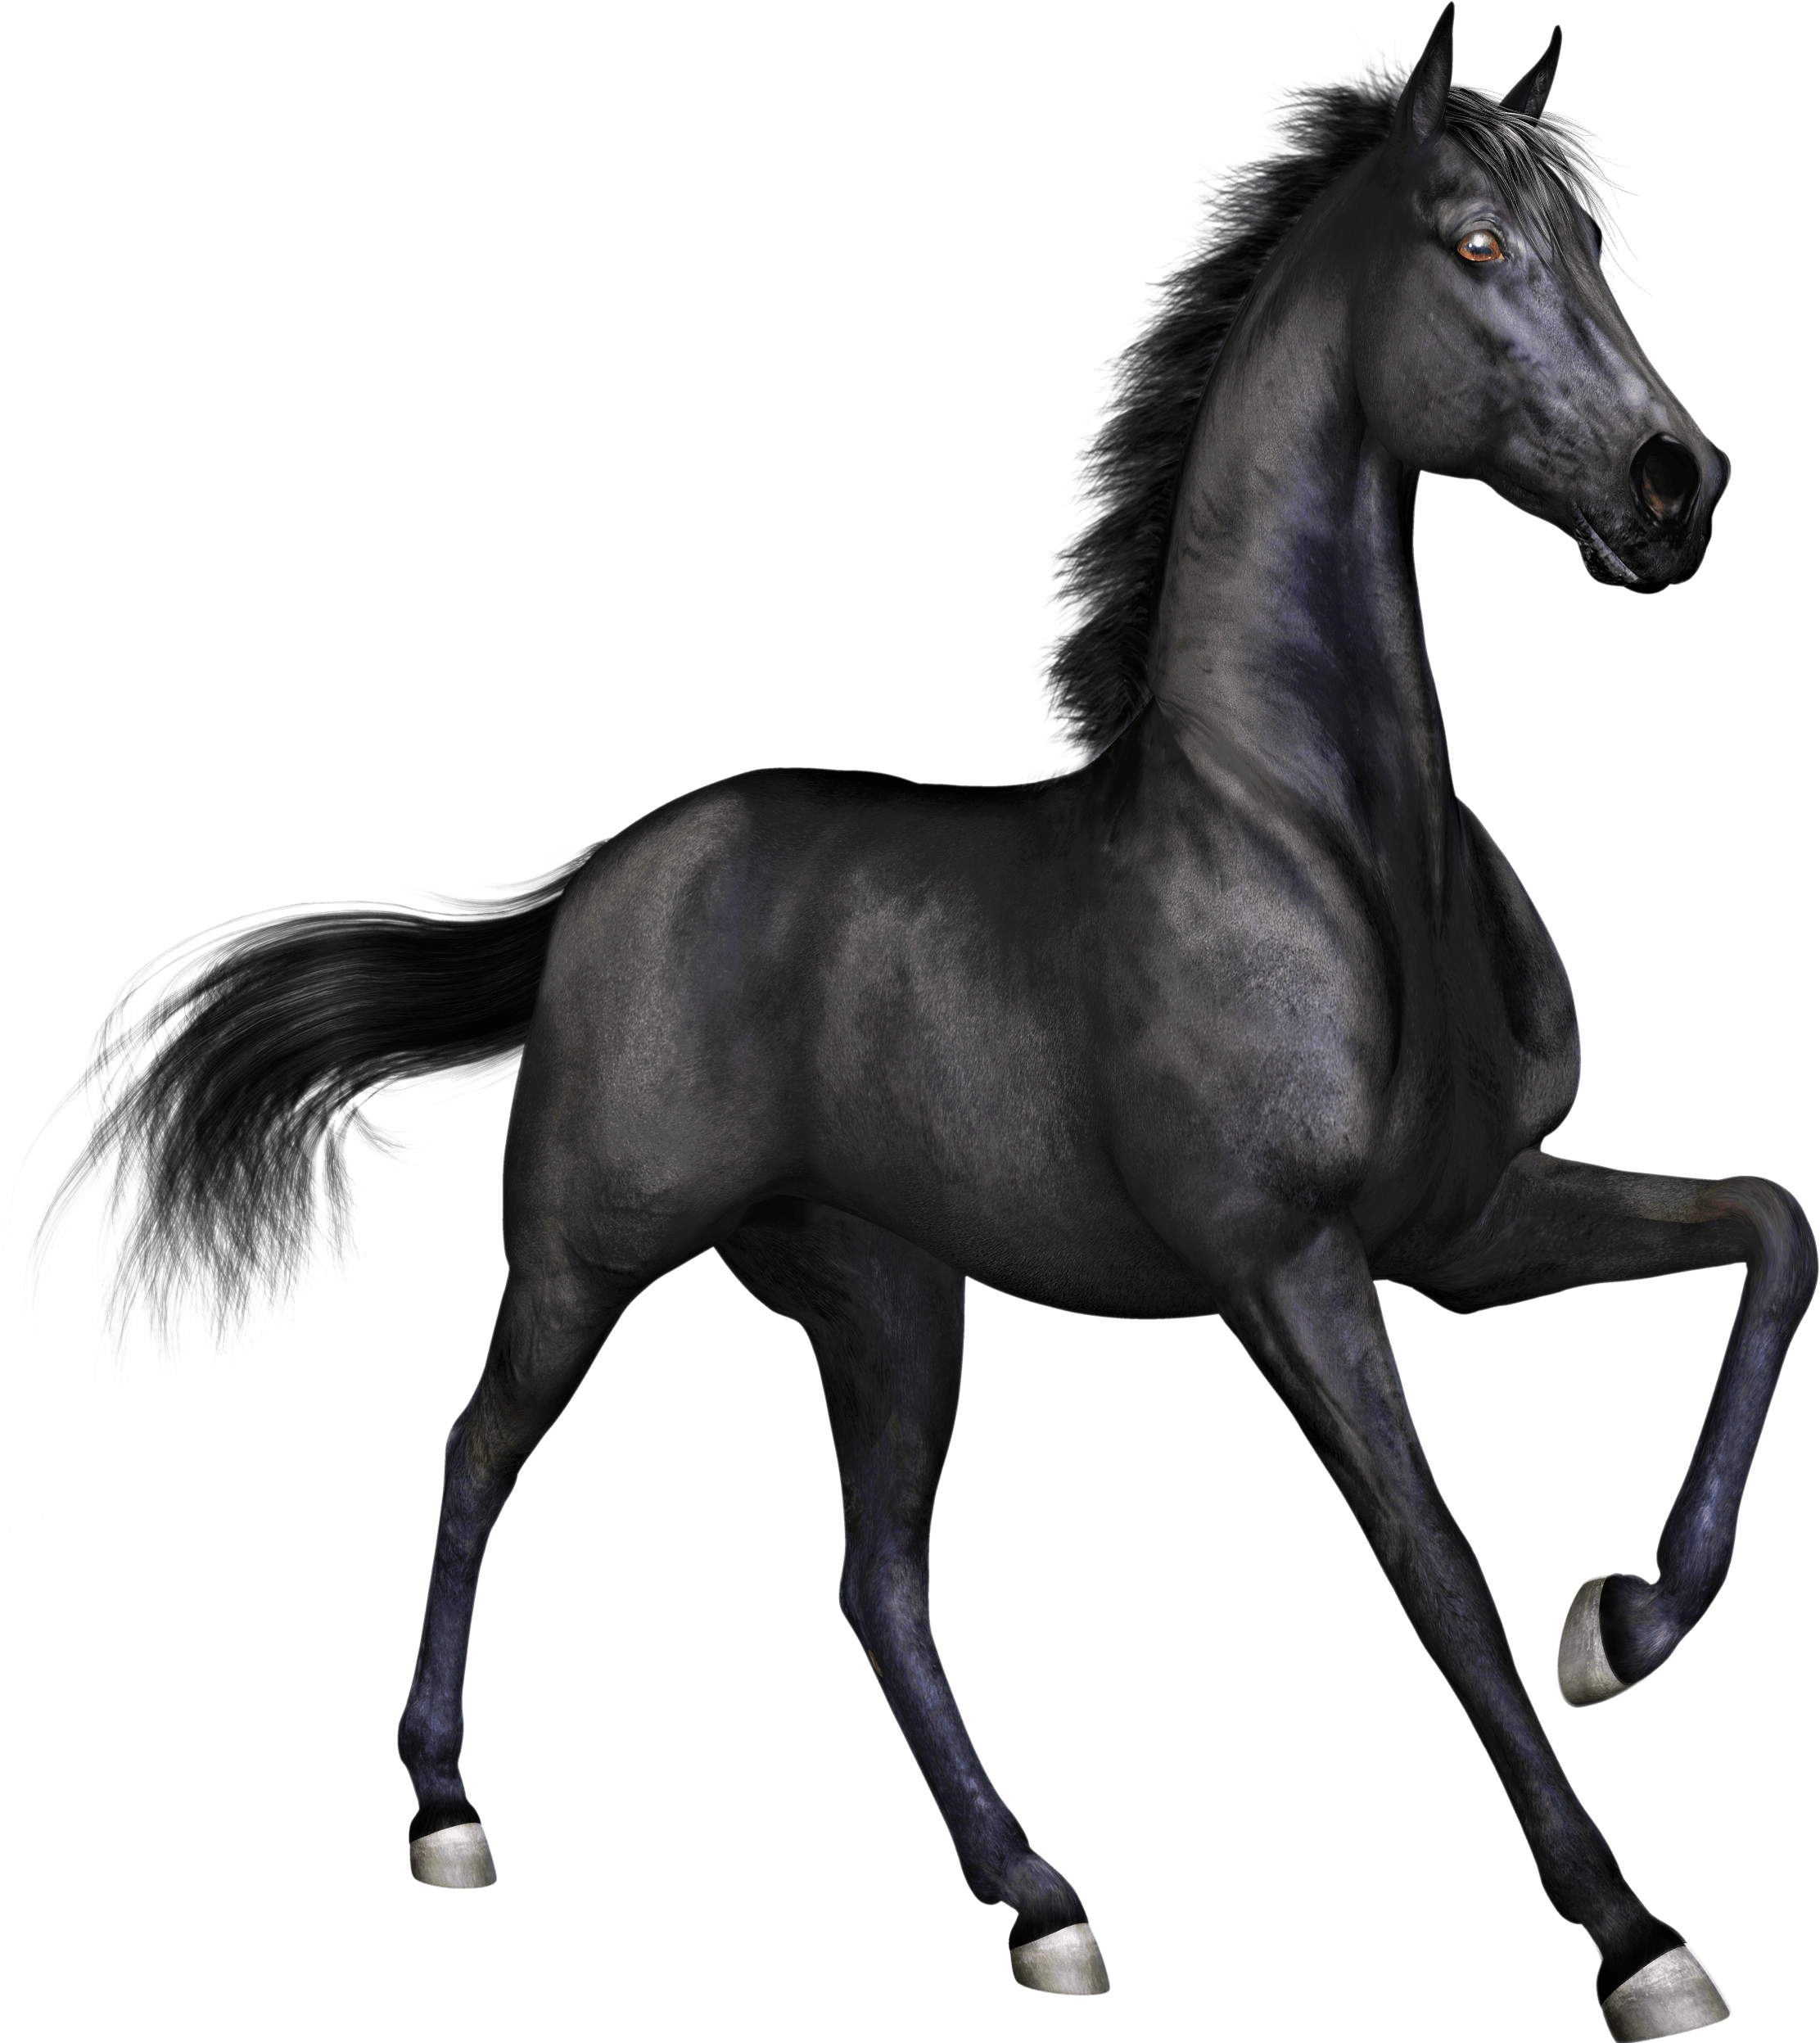 Black Horse PNG Image Background